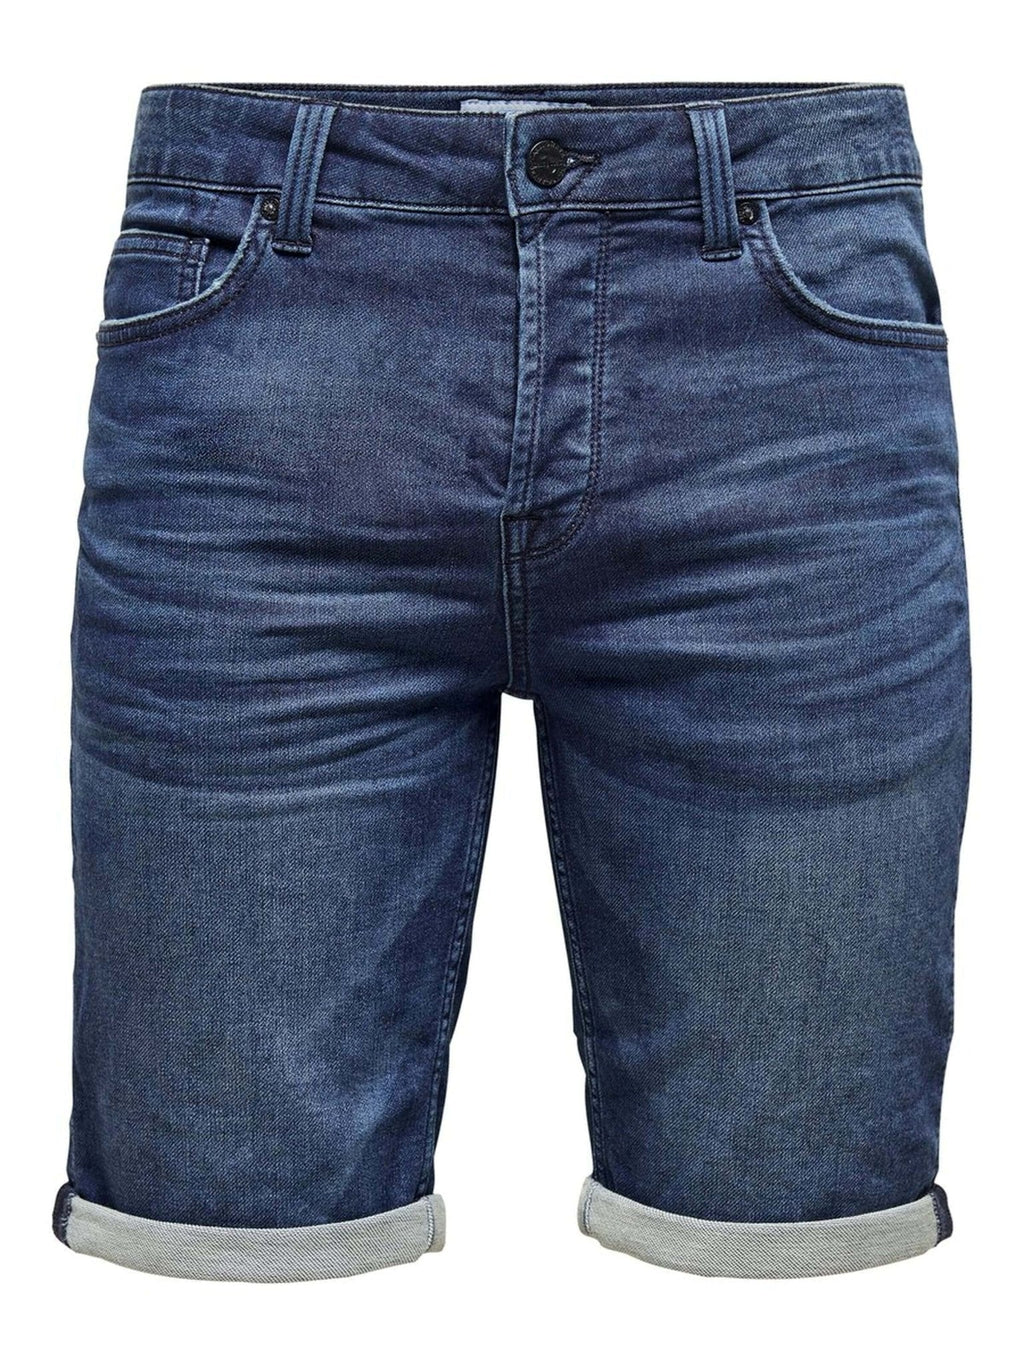 Denim Shorts - Blue Denim